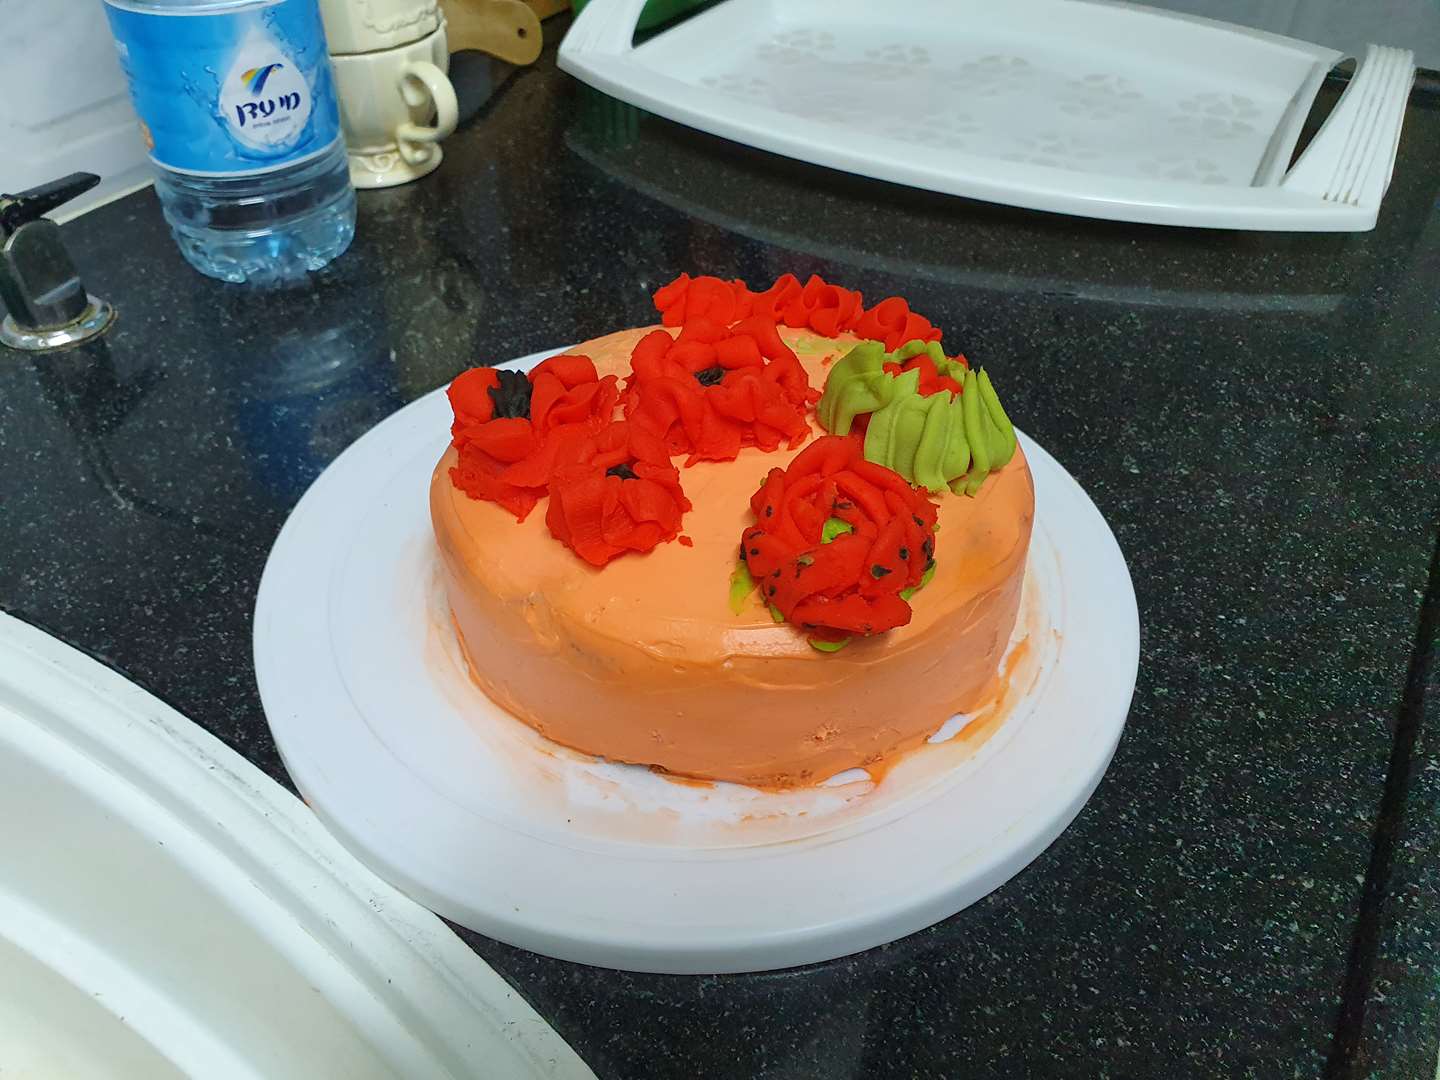 תמונה 2 ,עוגות למכירה בפתח תקווה שונות  שונות